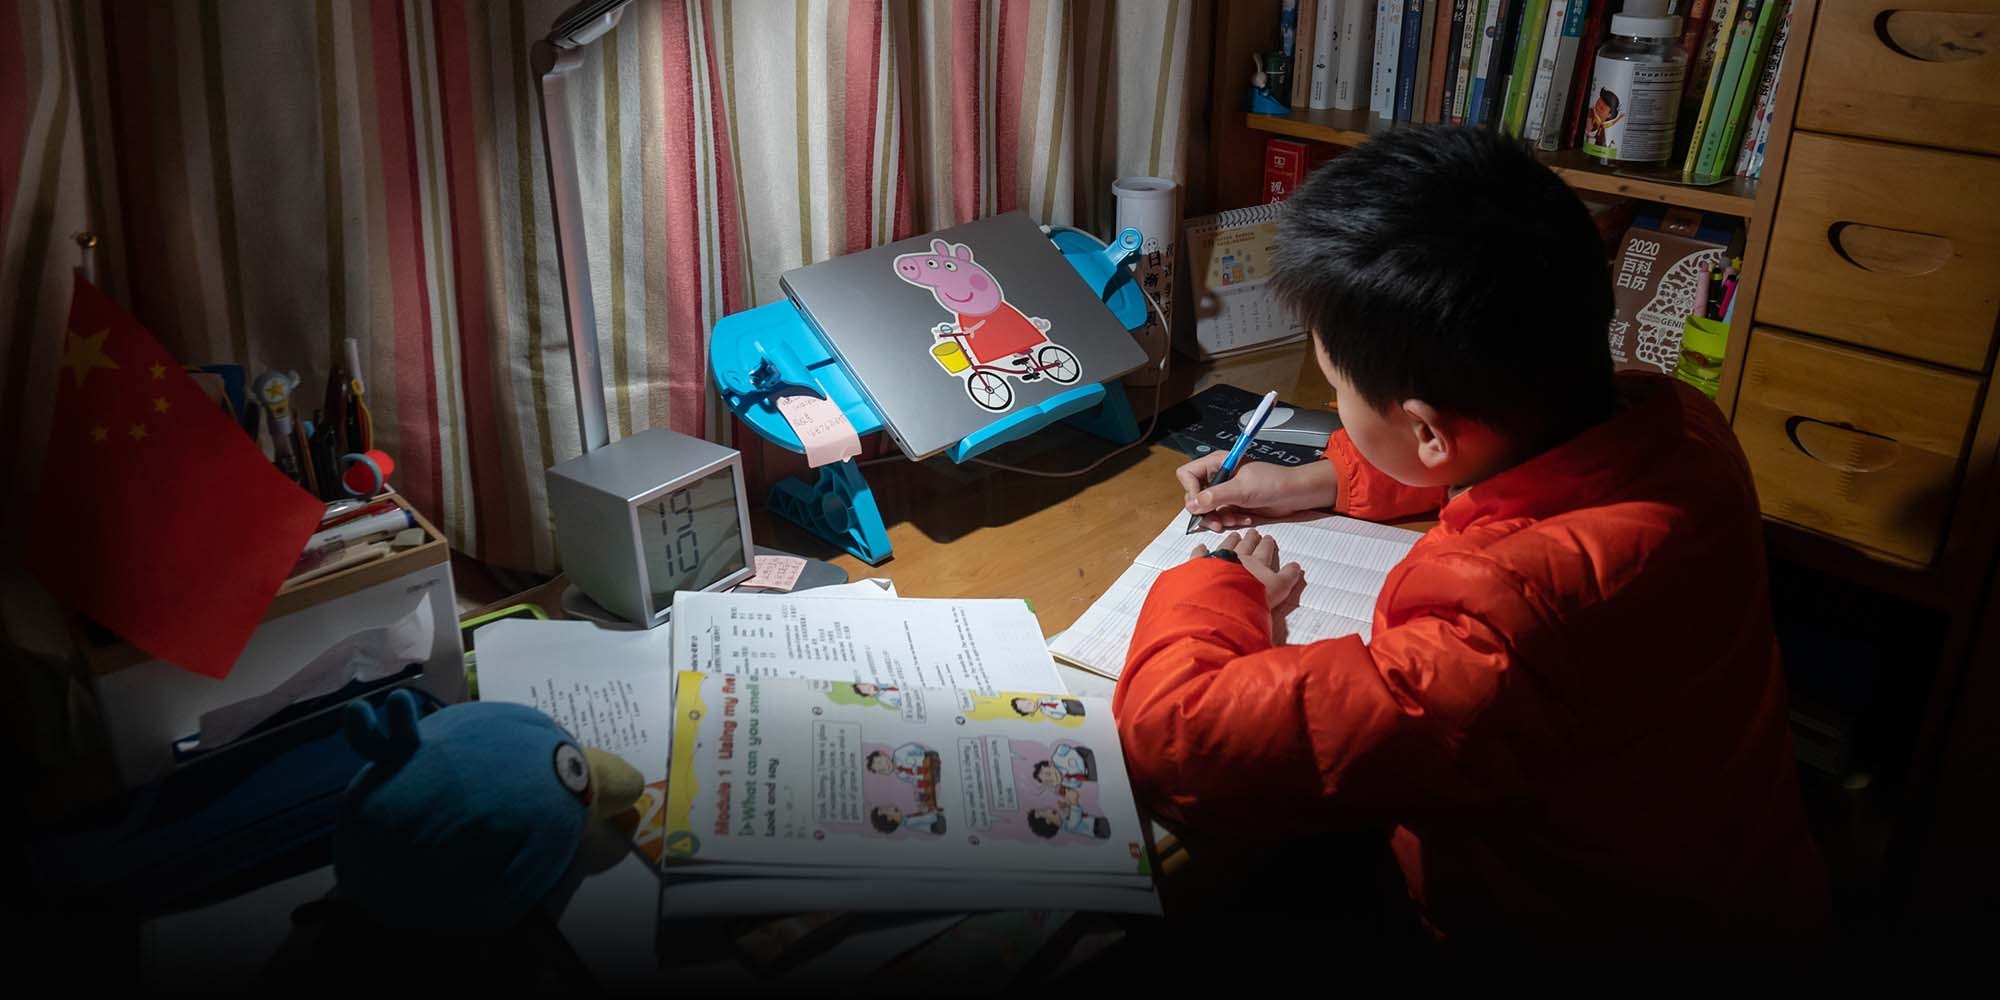 Trường tiểu học Trung Quốc yêu cầu học sinh không làm bài tập sau 9 giờ tối để có thể ngủ nhiều hơn - Ảnh 1.